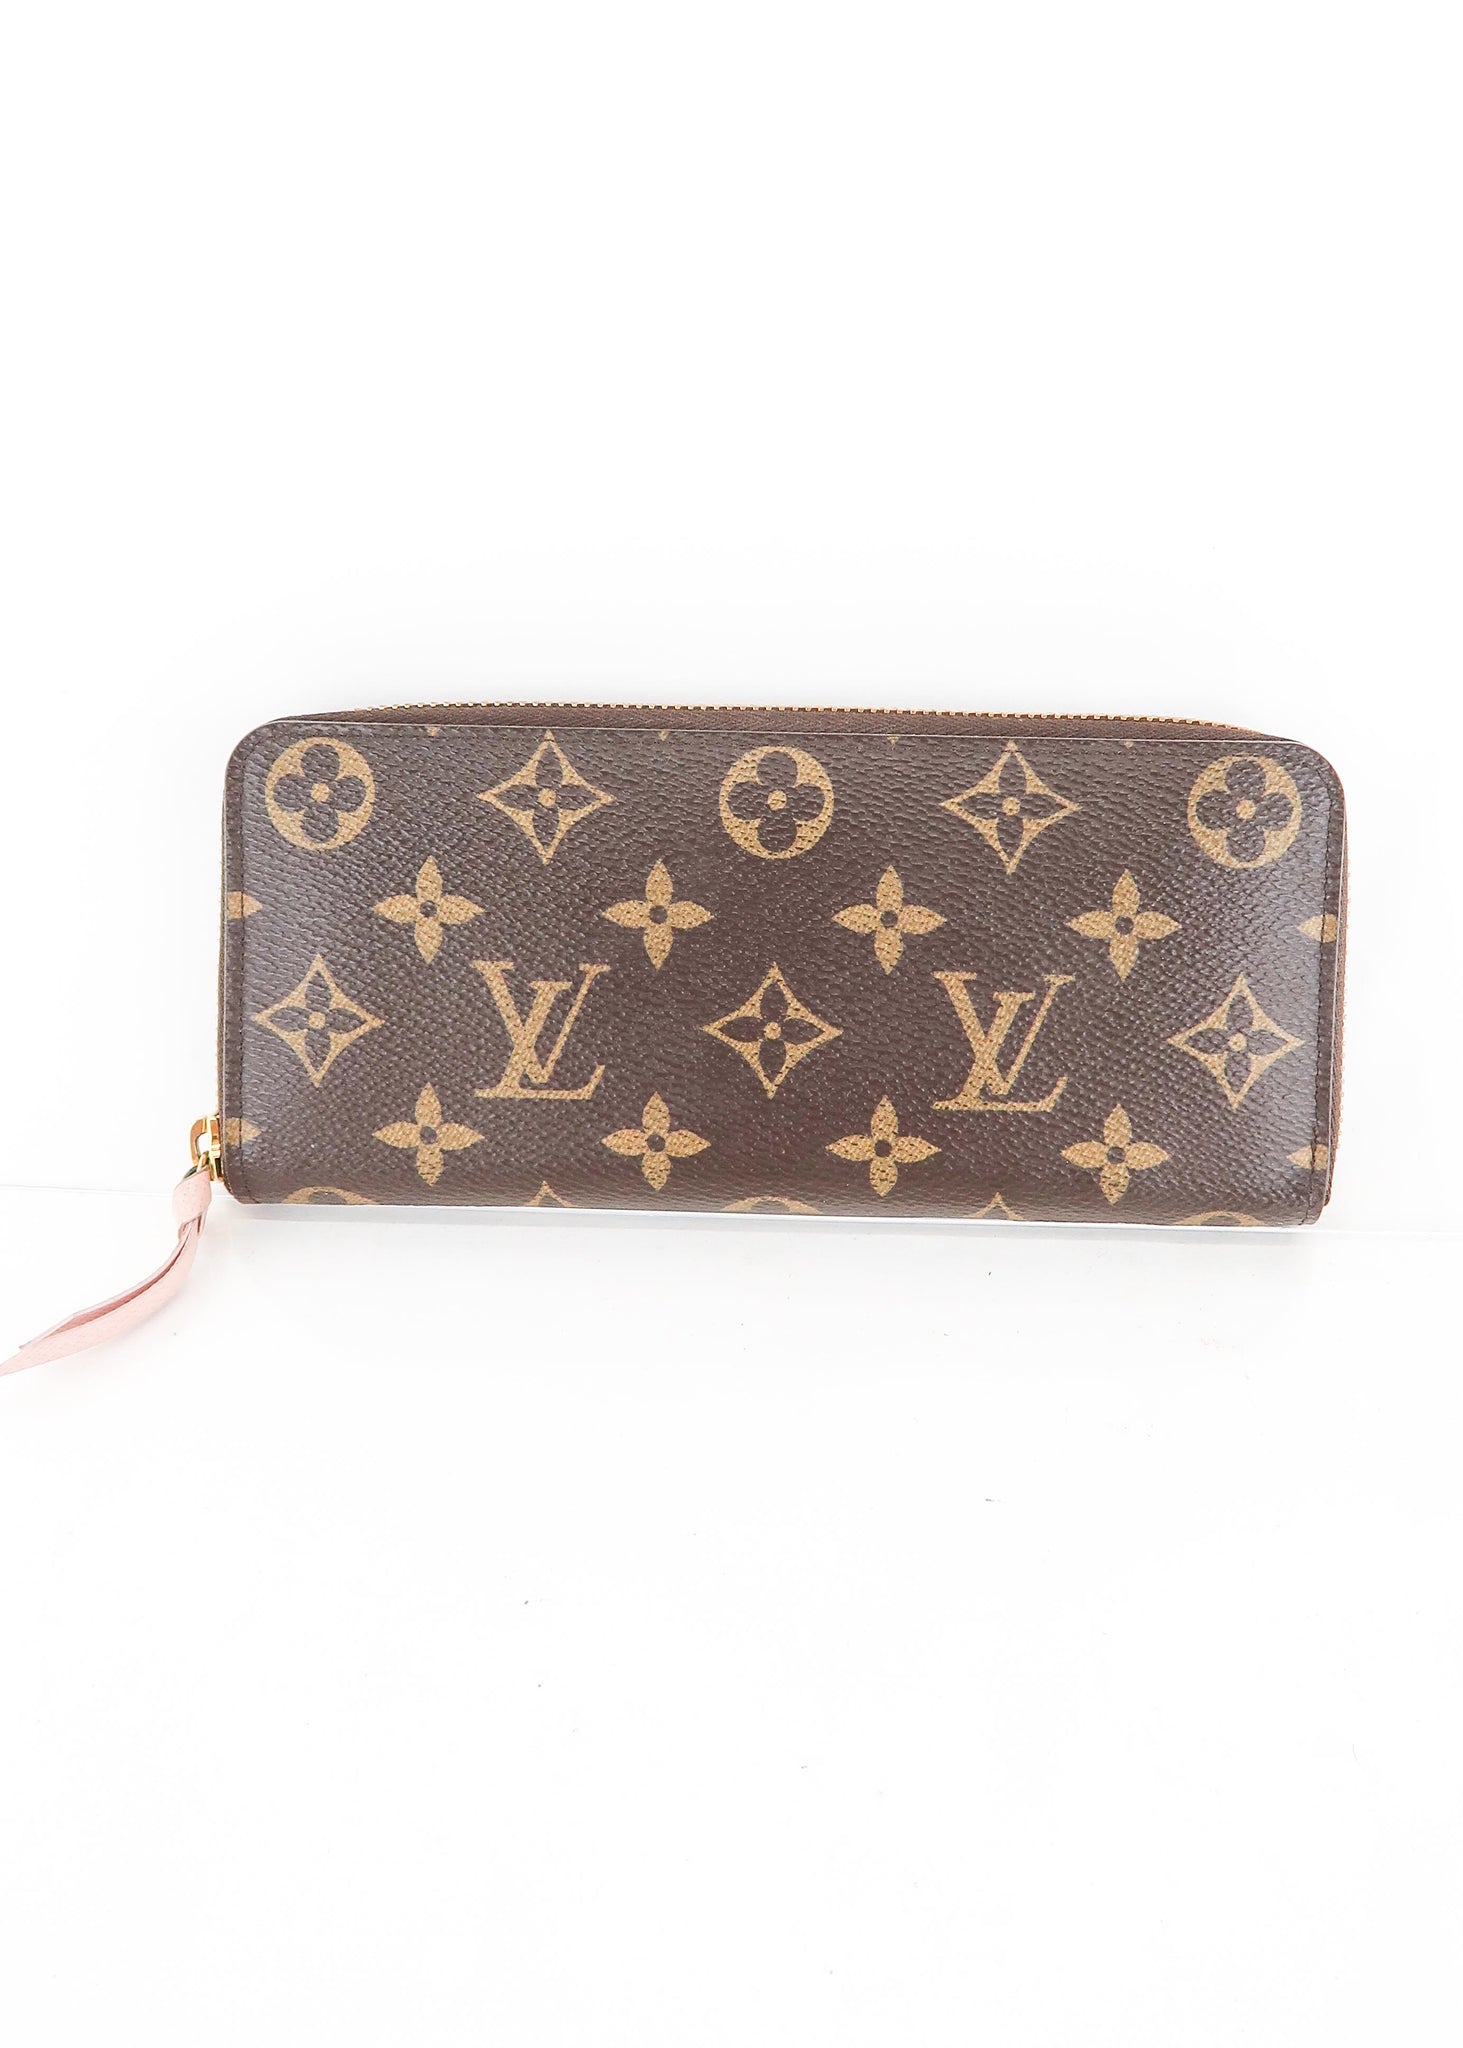 Louis Vuitton Celemence Wallet